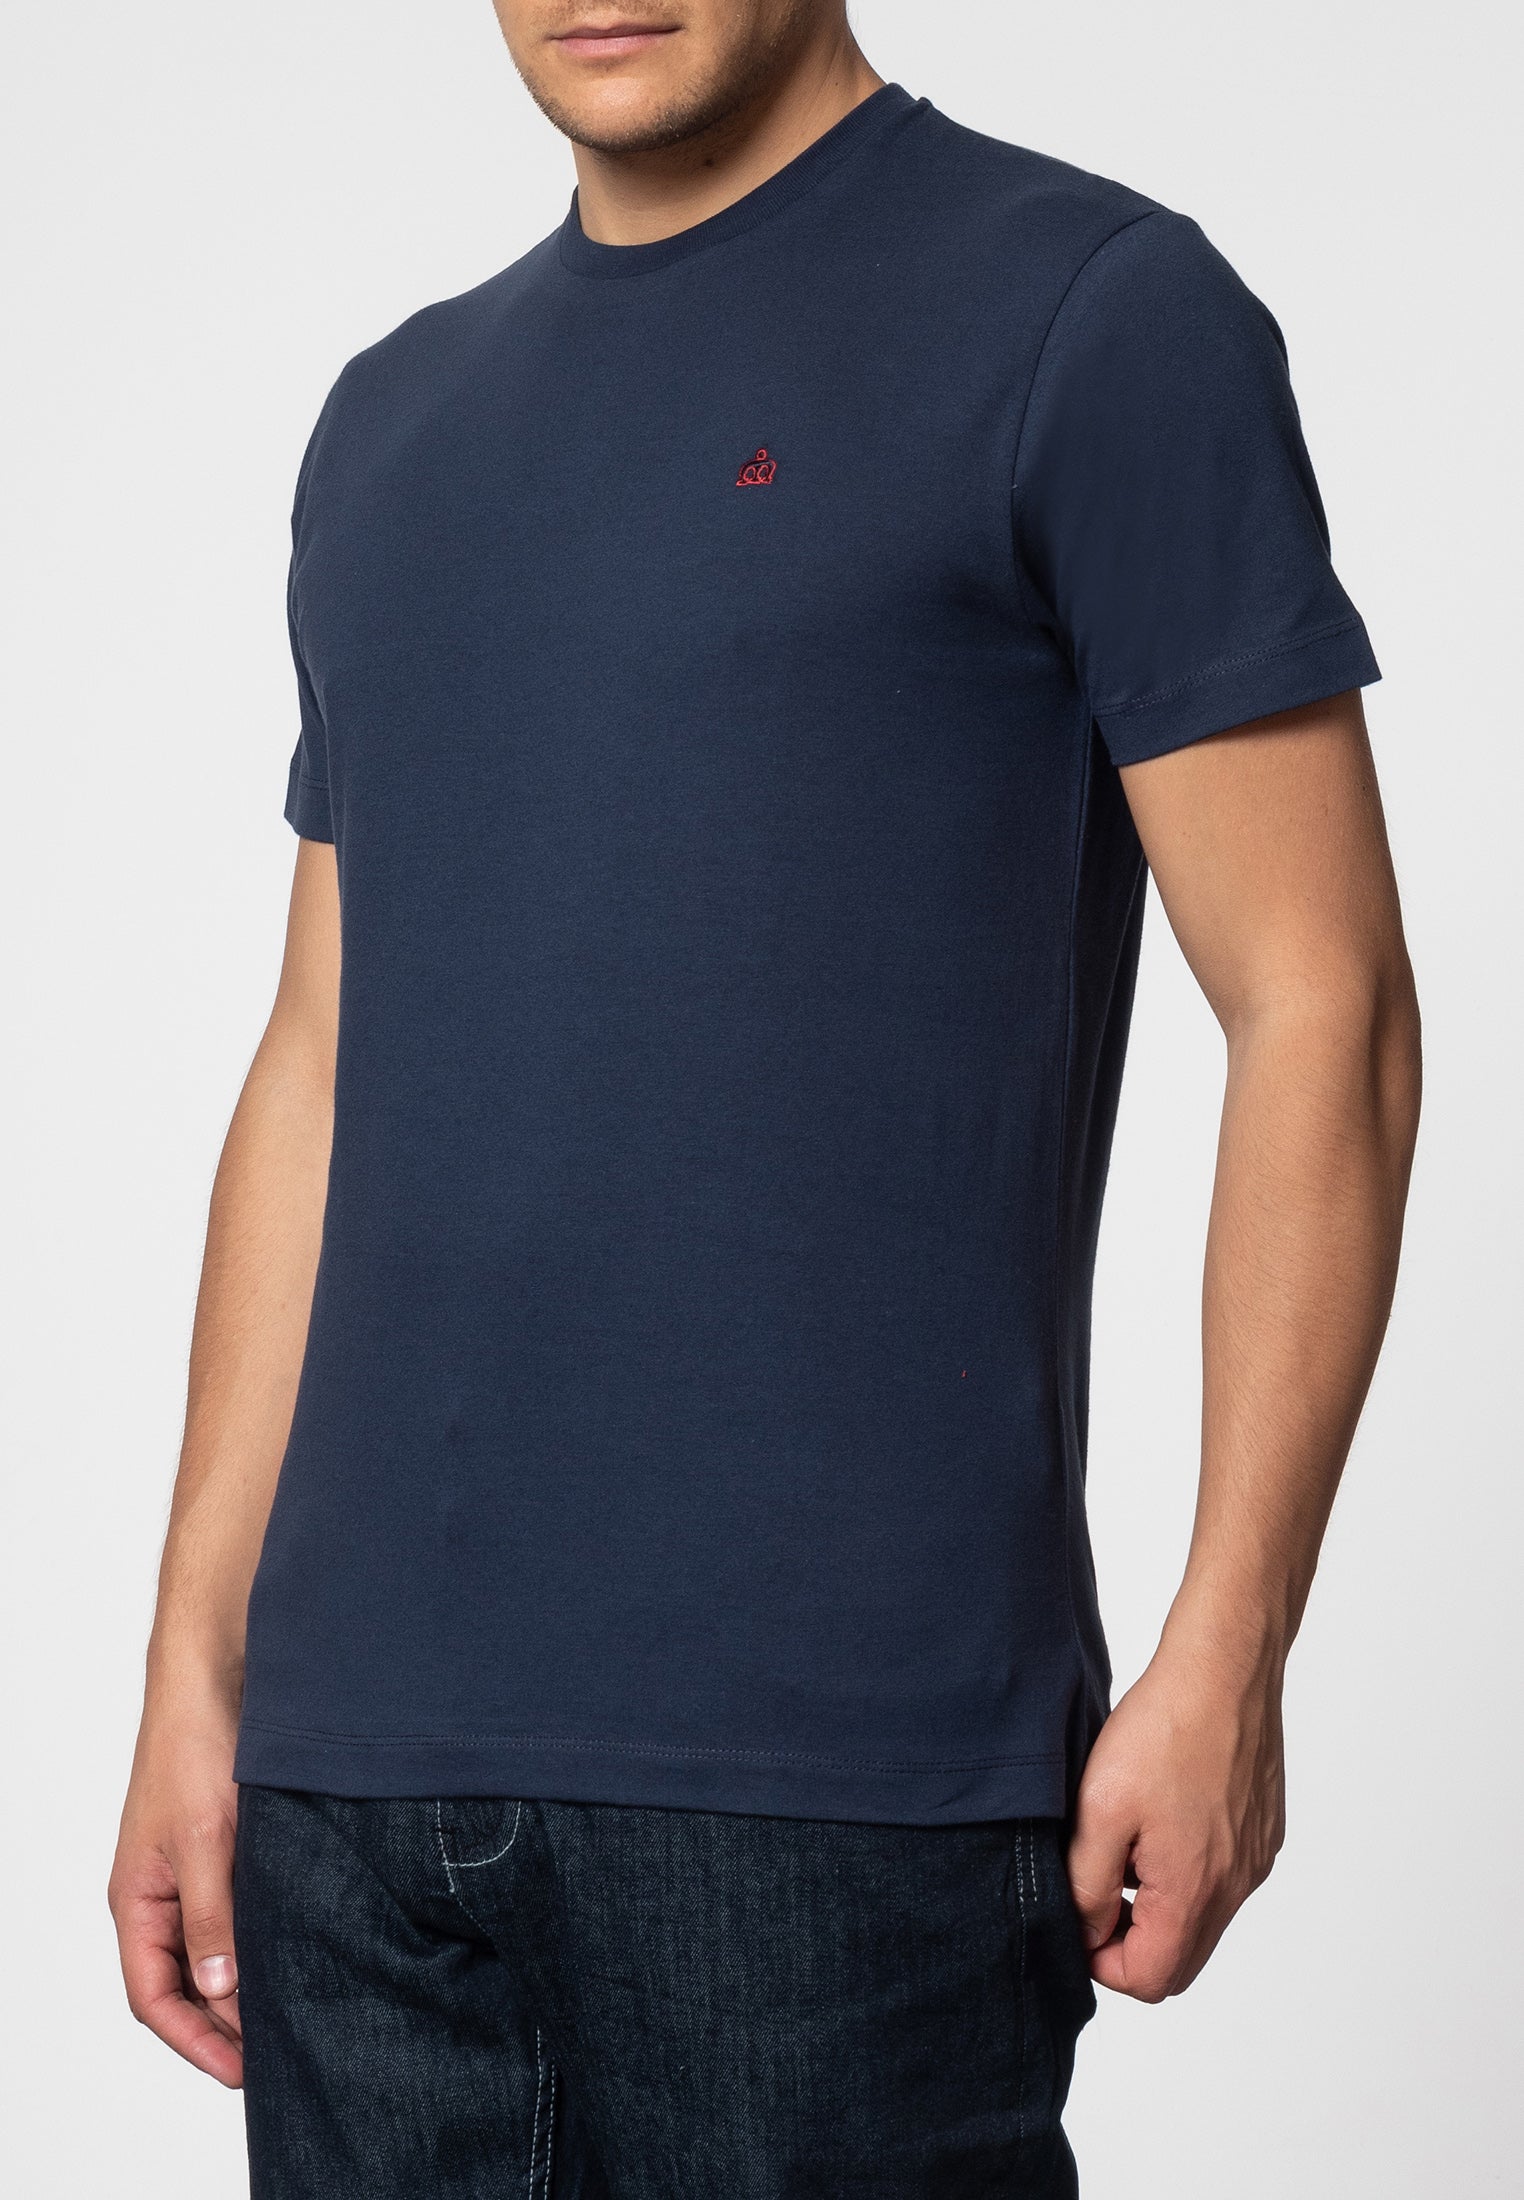 Keyport T-Shirt - Merc London